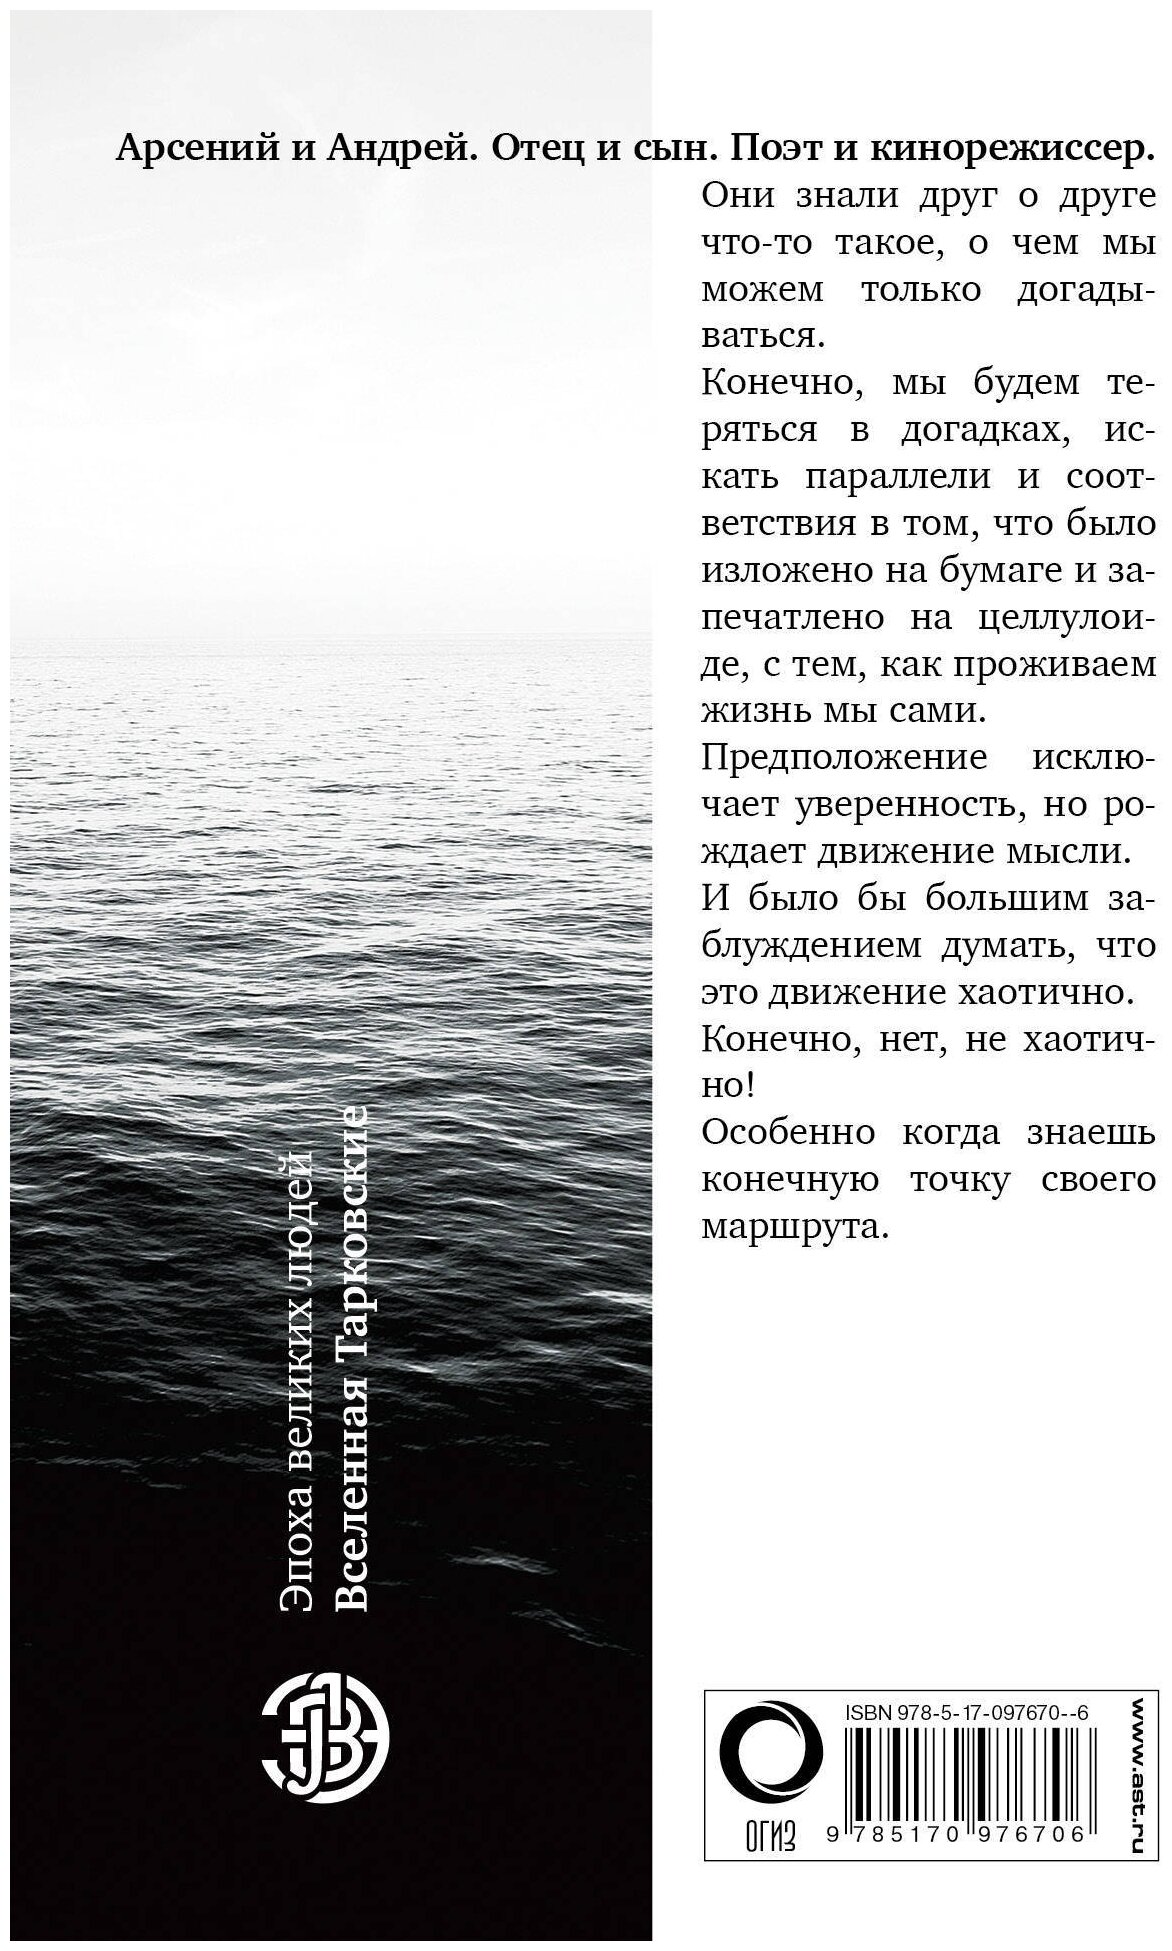 Вселенная Тарковские: Арсений и Андрей - фото №2